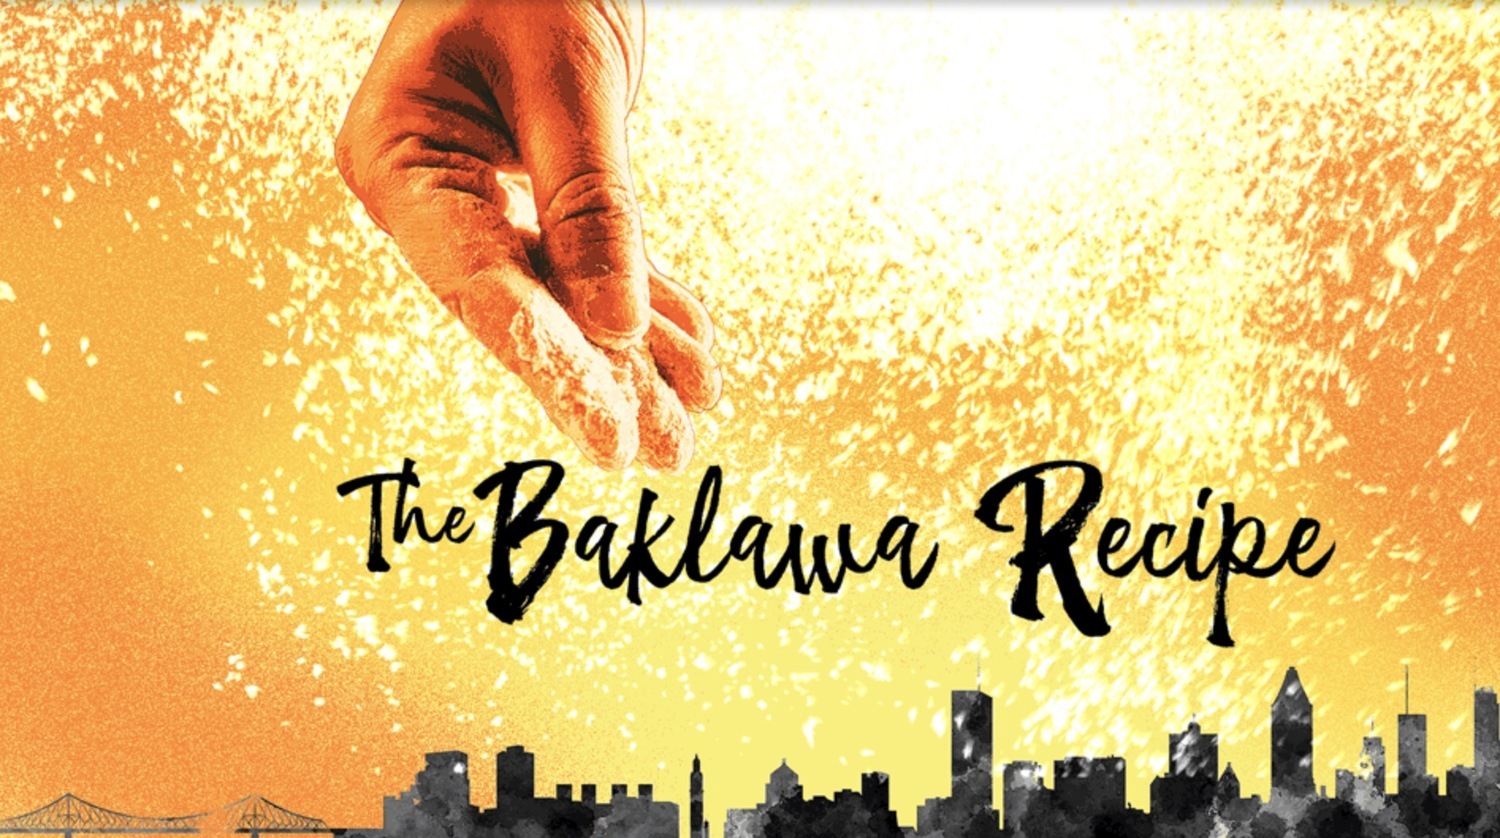 Centaur Theatre Company Presents World Premiere of THE BAKLAWA RECIPE 